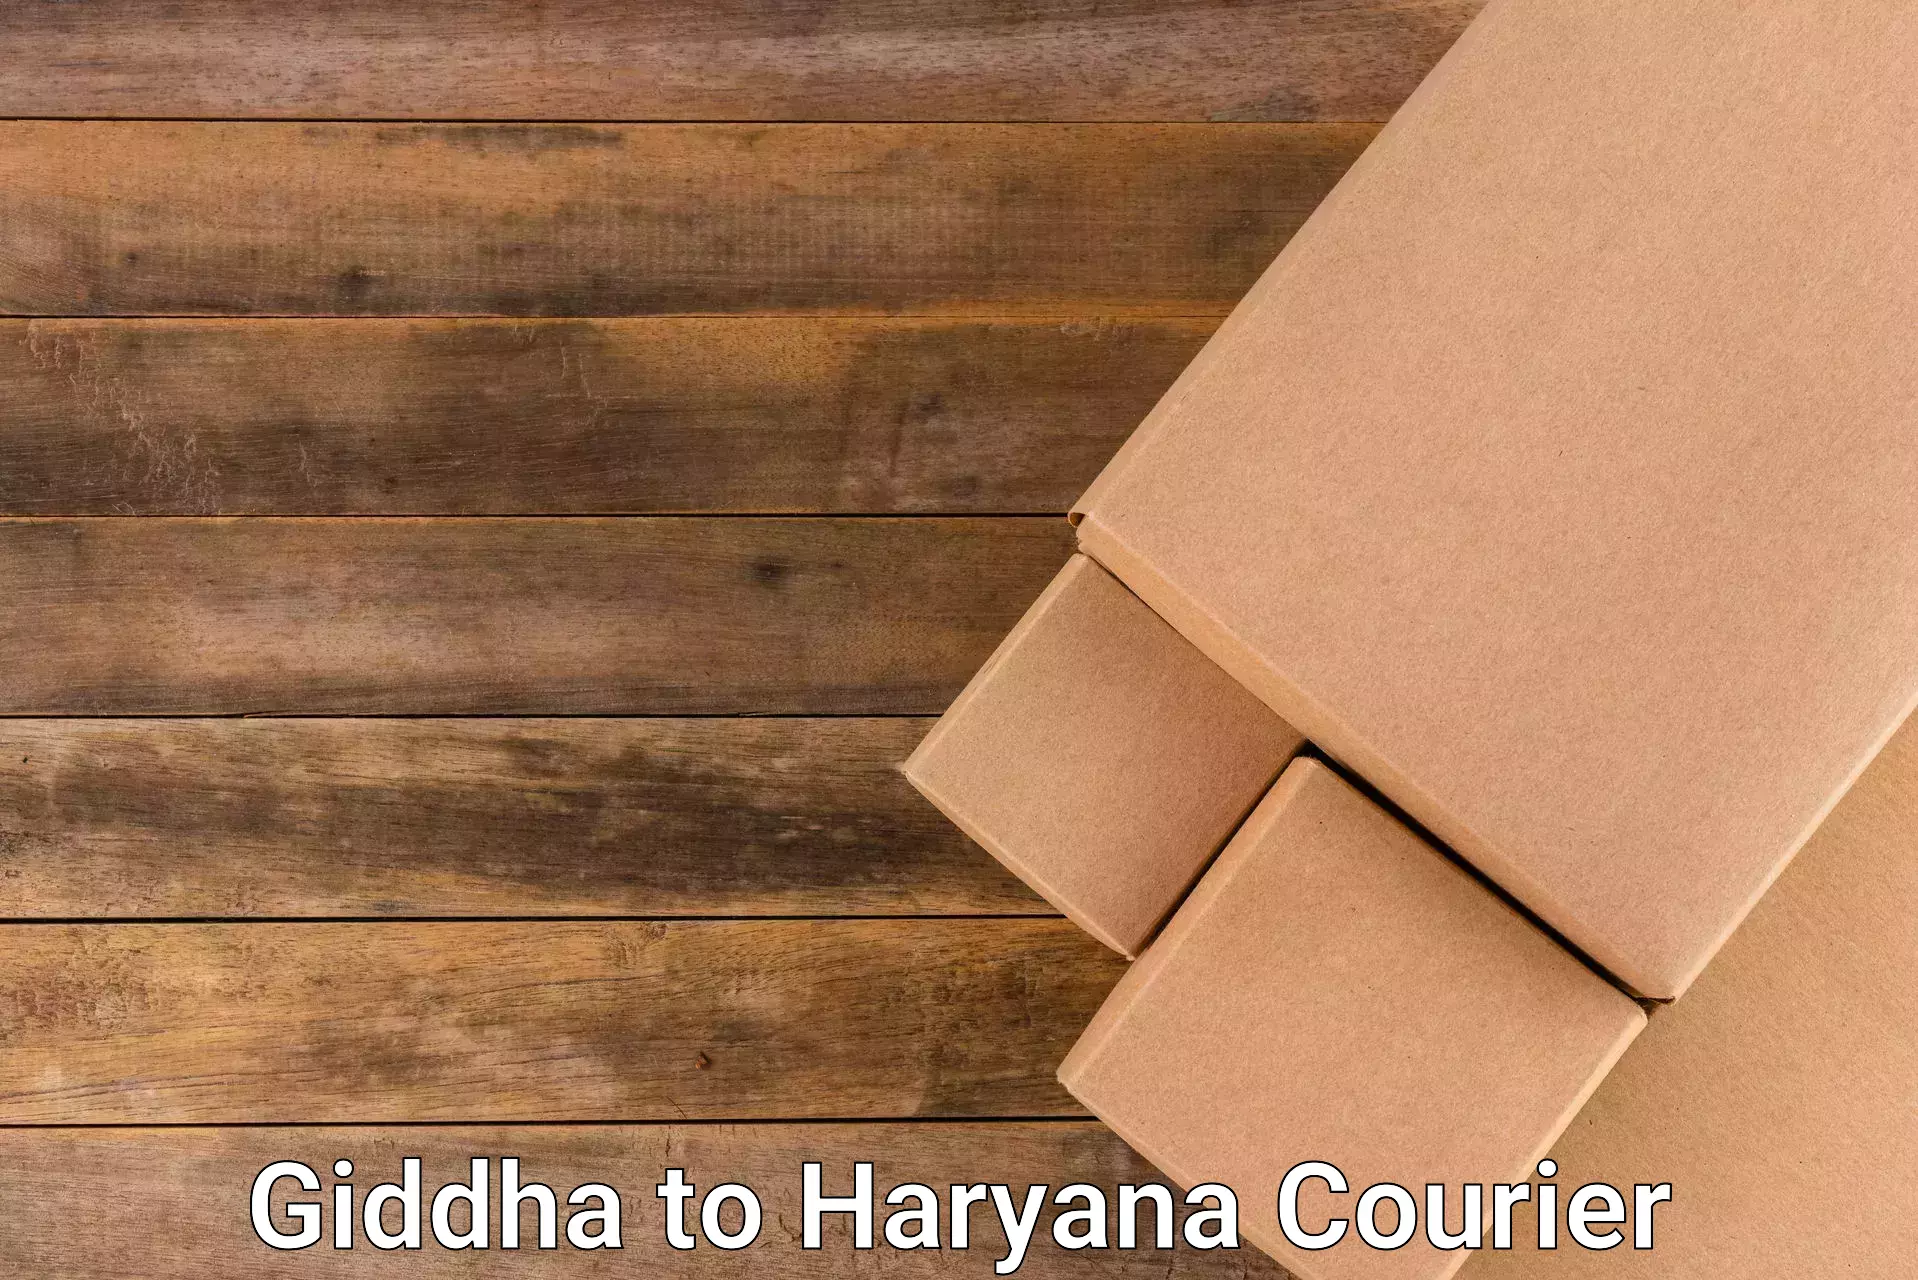 Special handling courier Giddha to Kurukshetra University